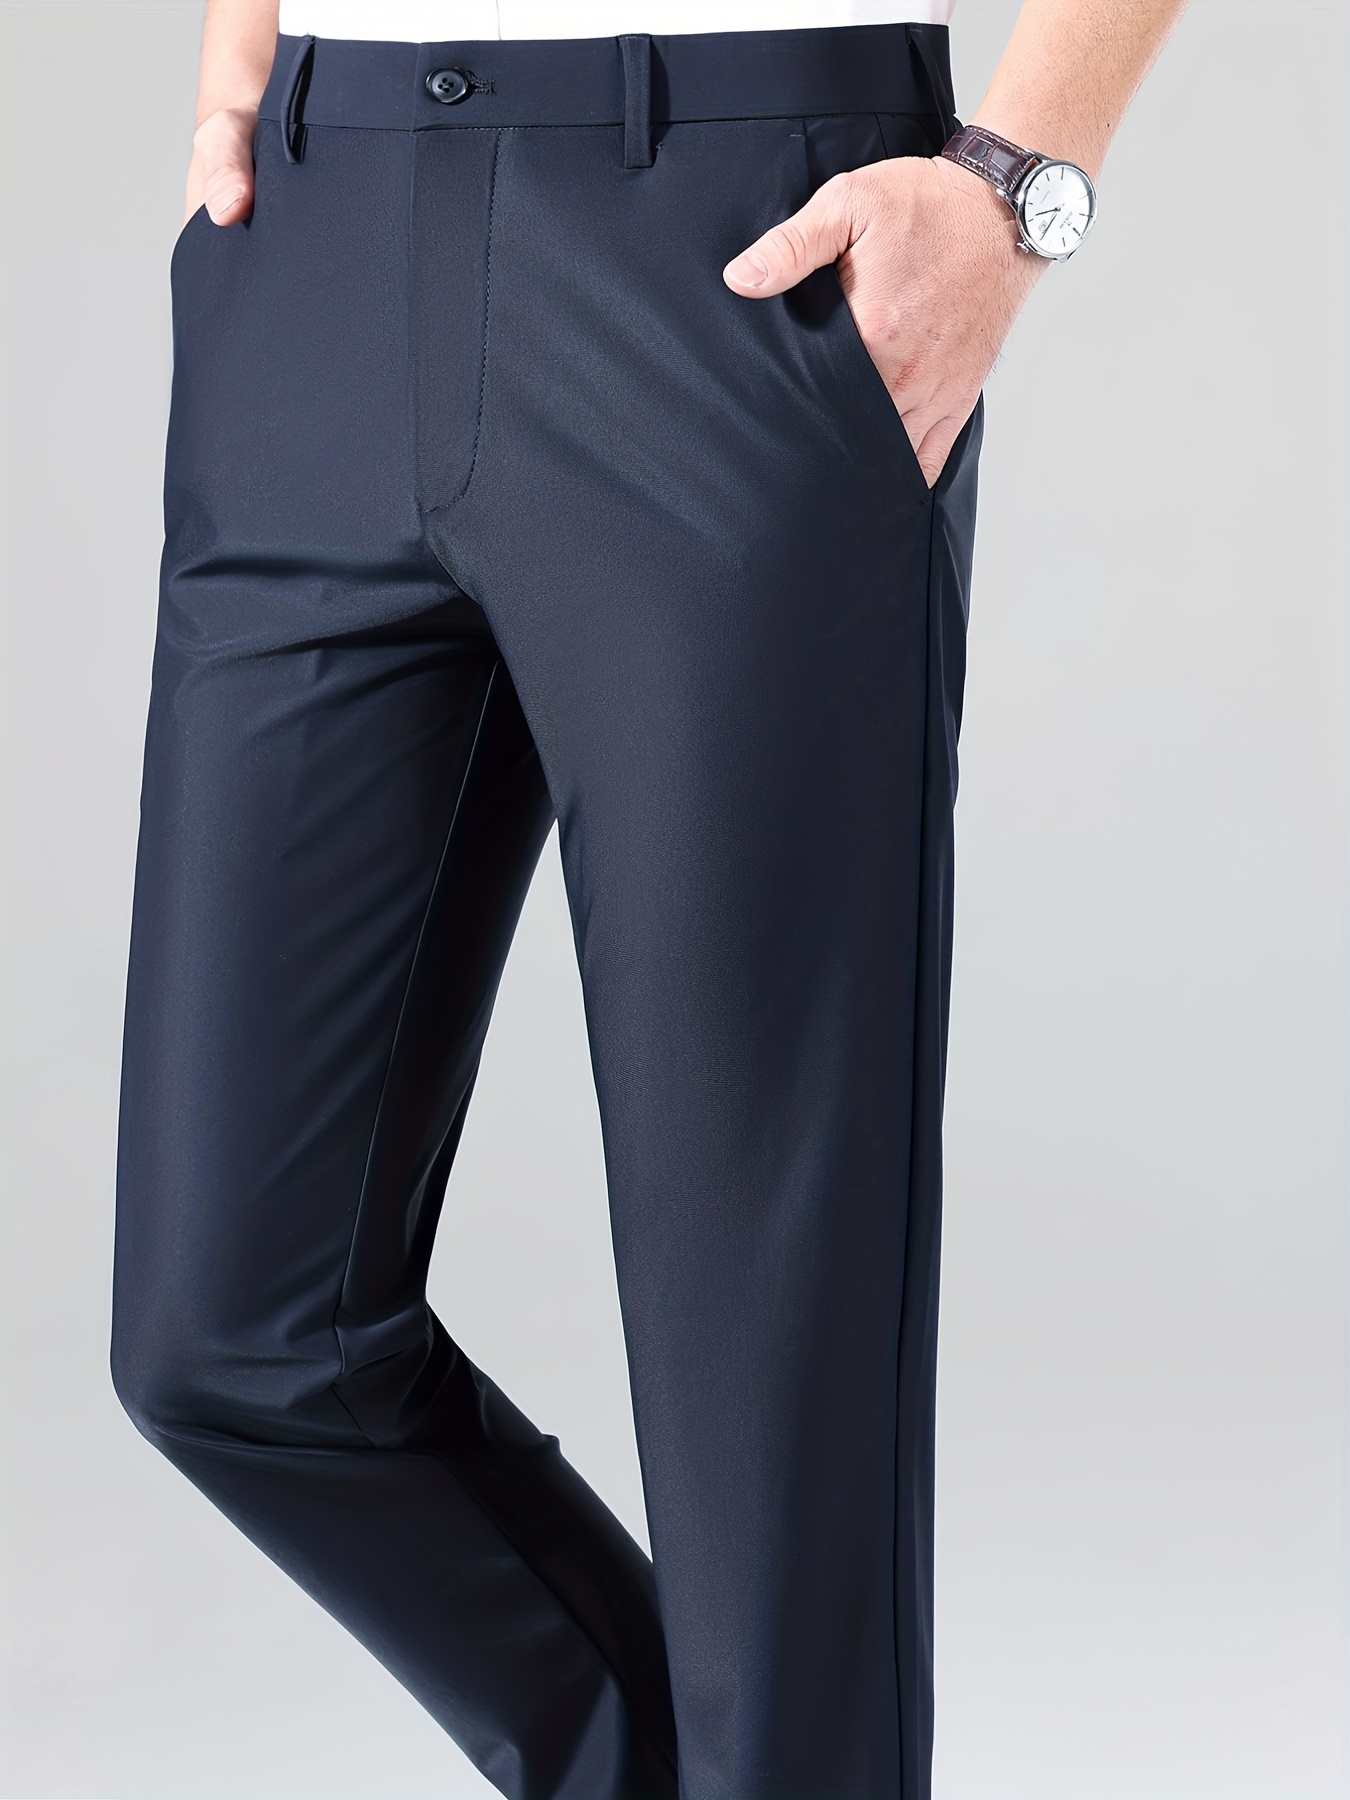 Deltin Hub Lycra Stretchable Formal Pants for Men